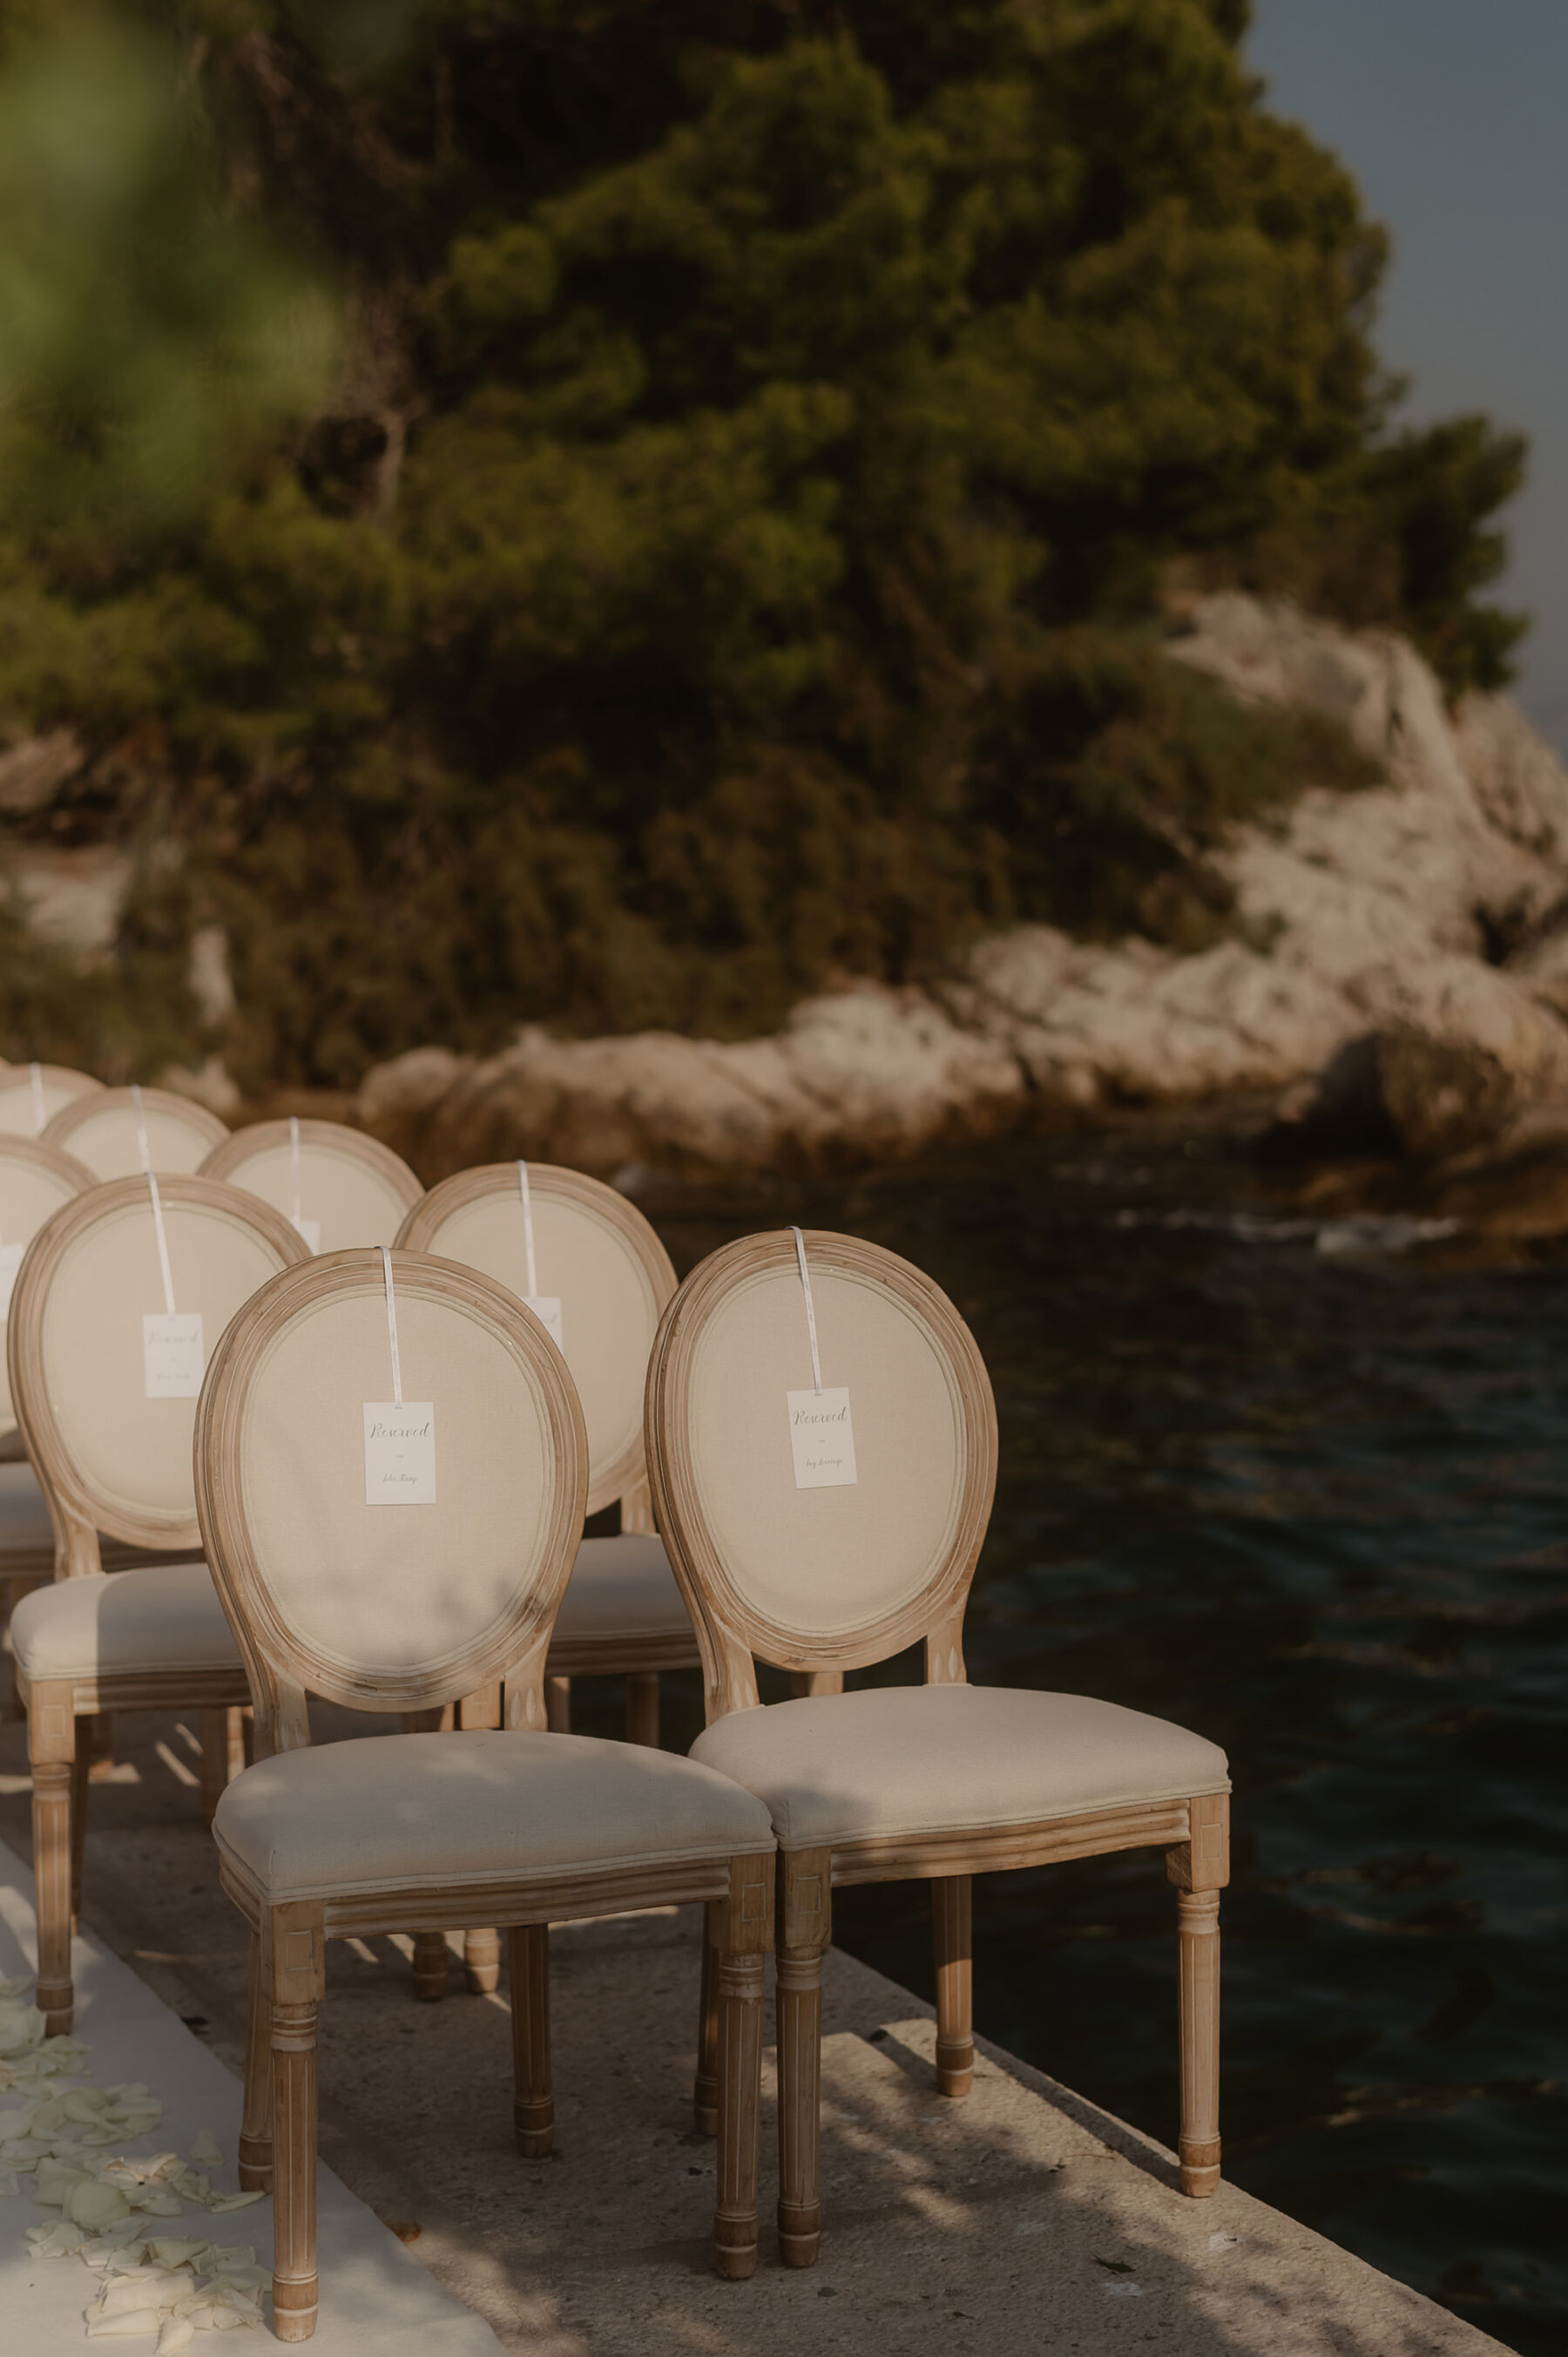 Outdoor wedding ceremony by the sea in Croatia